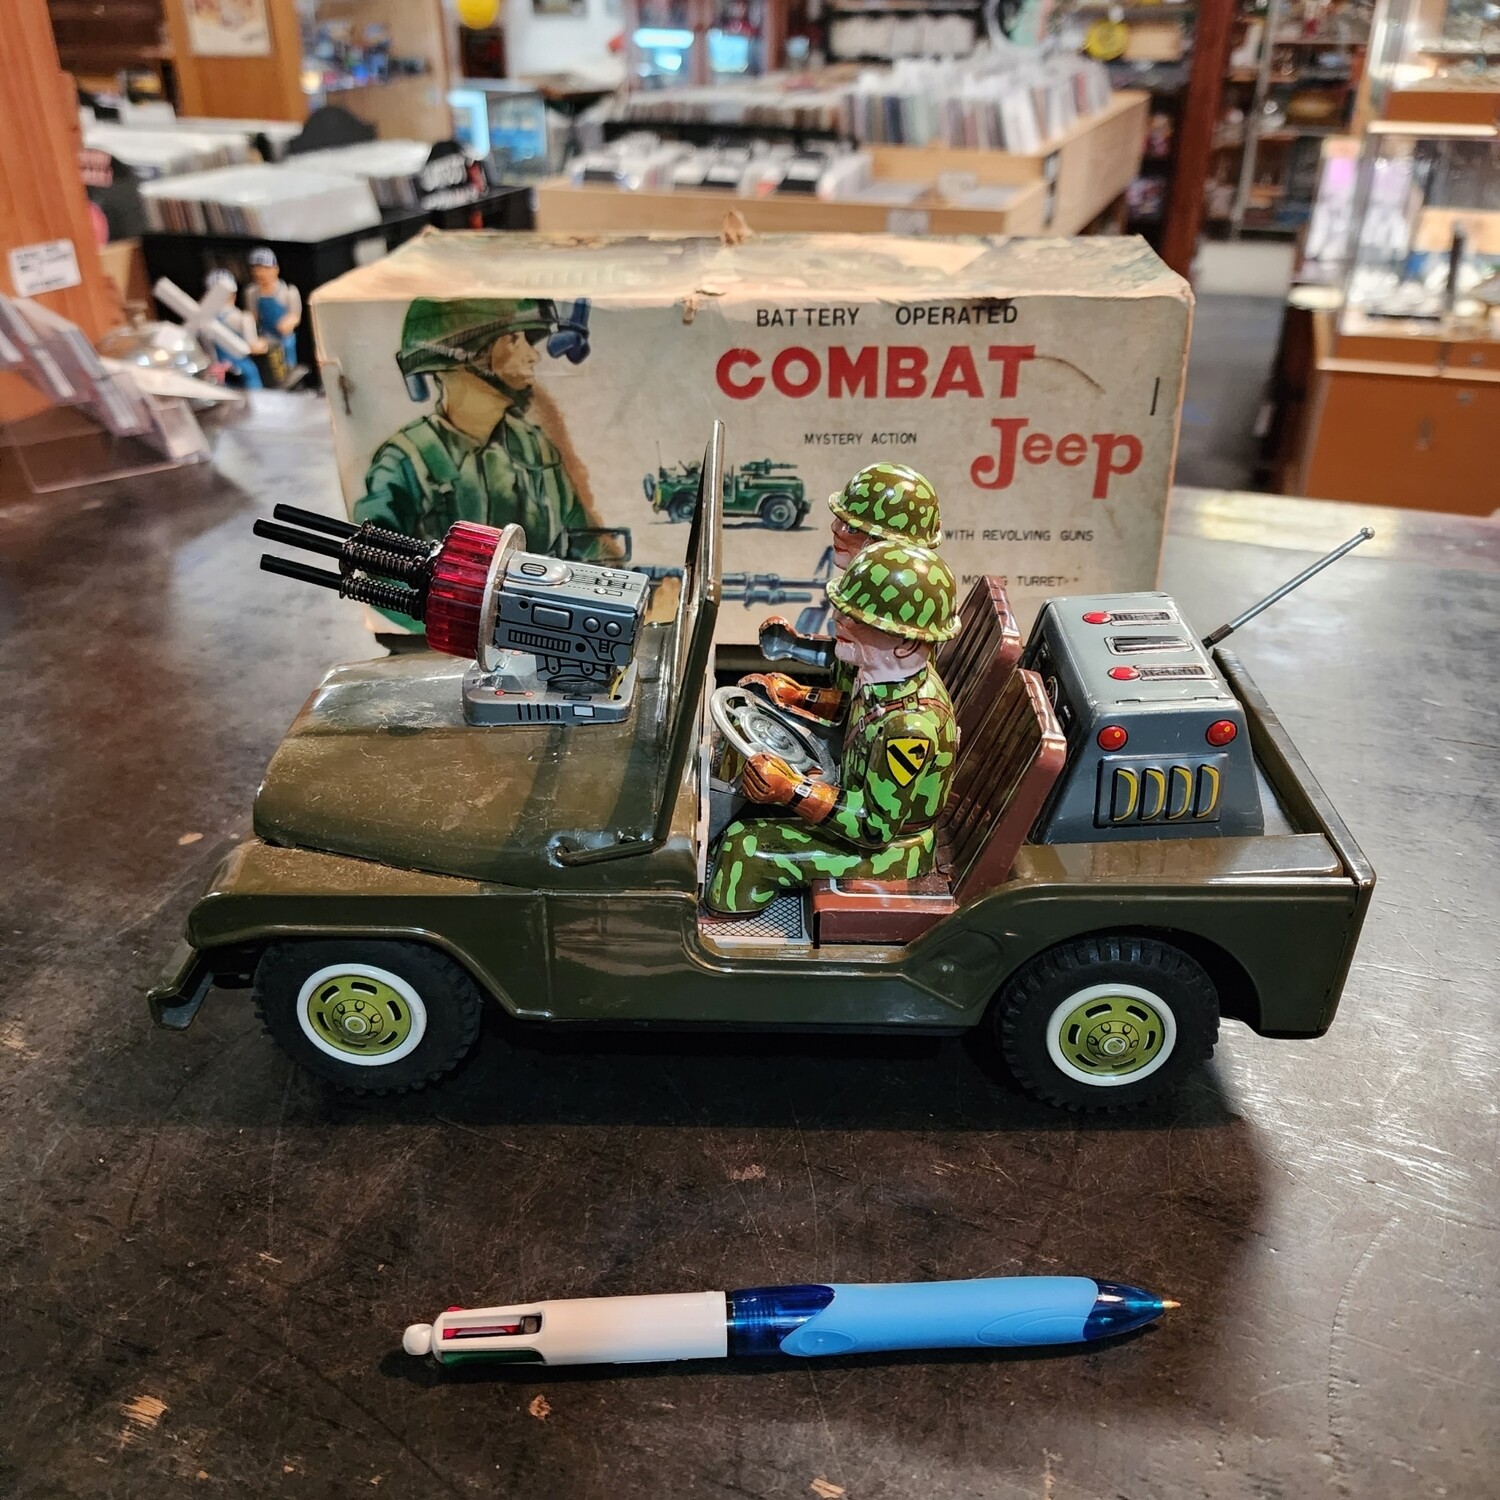 Combat jeep tin toy